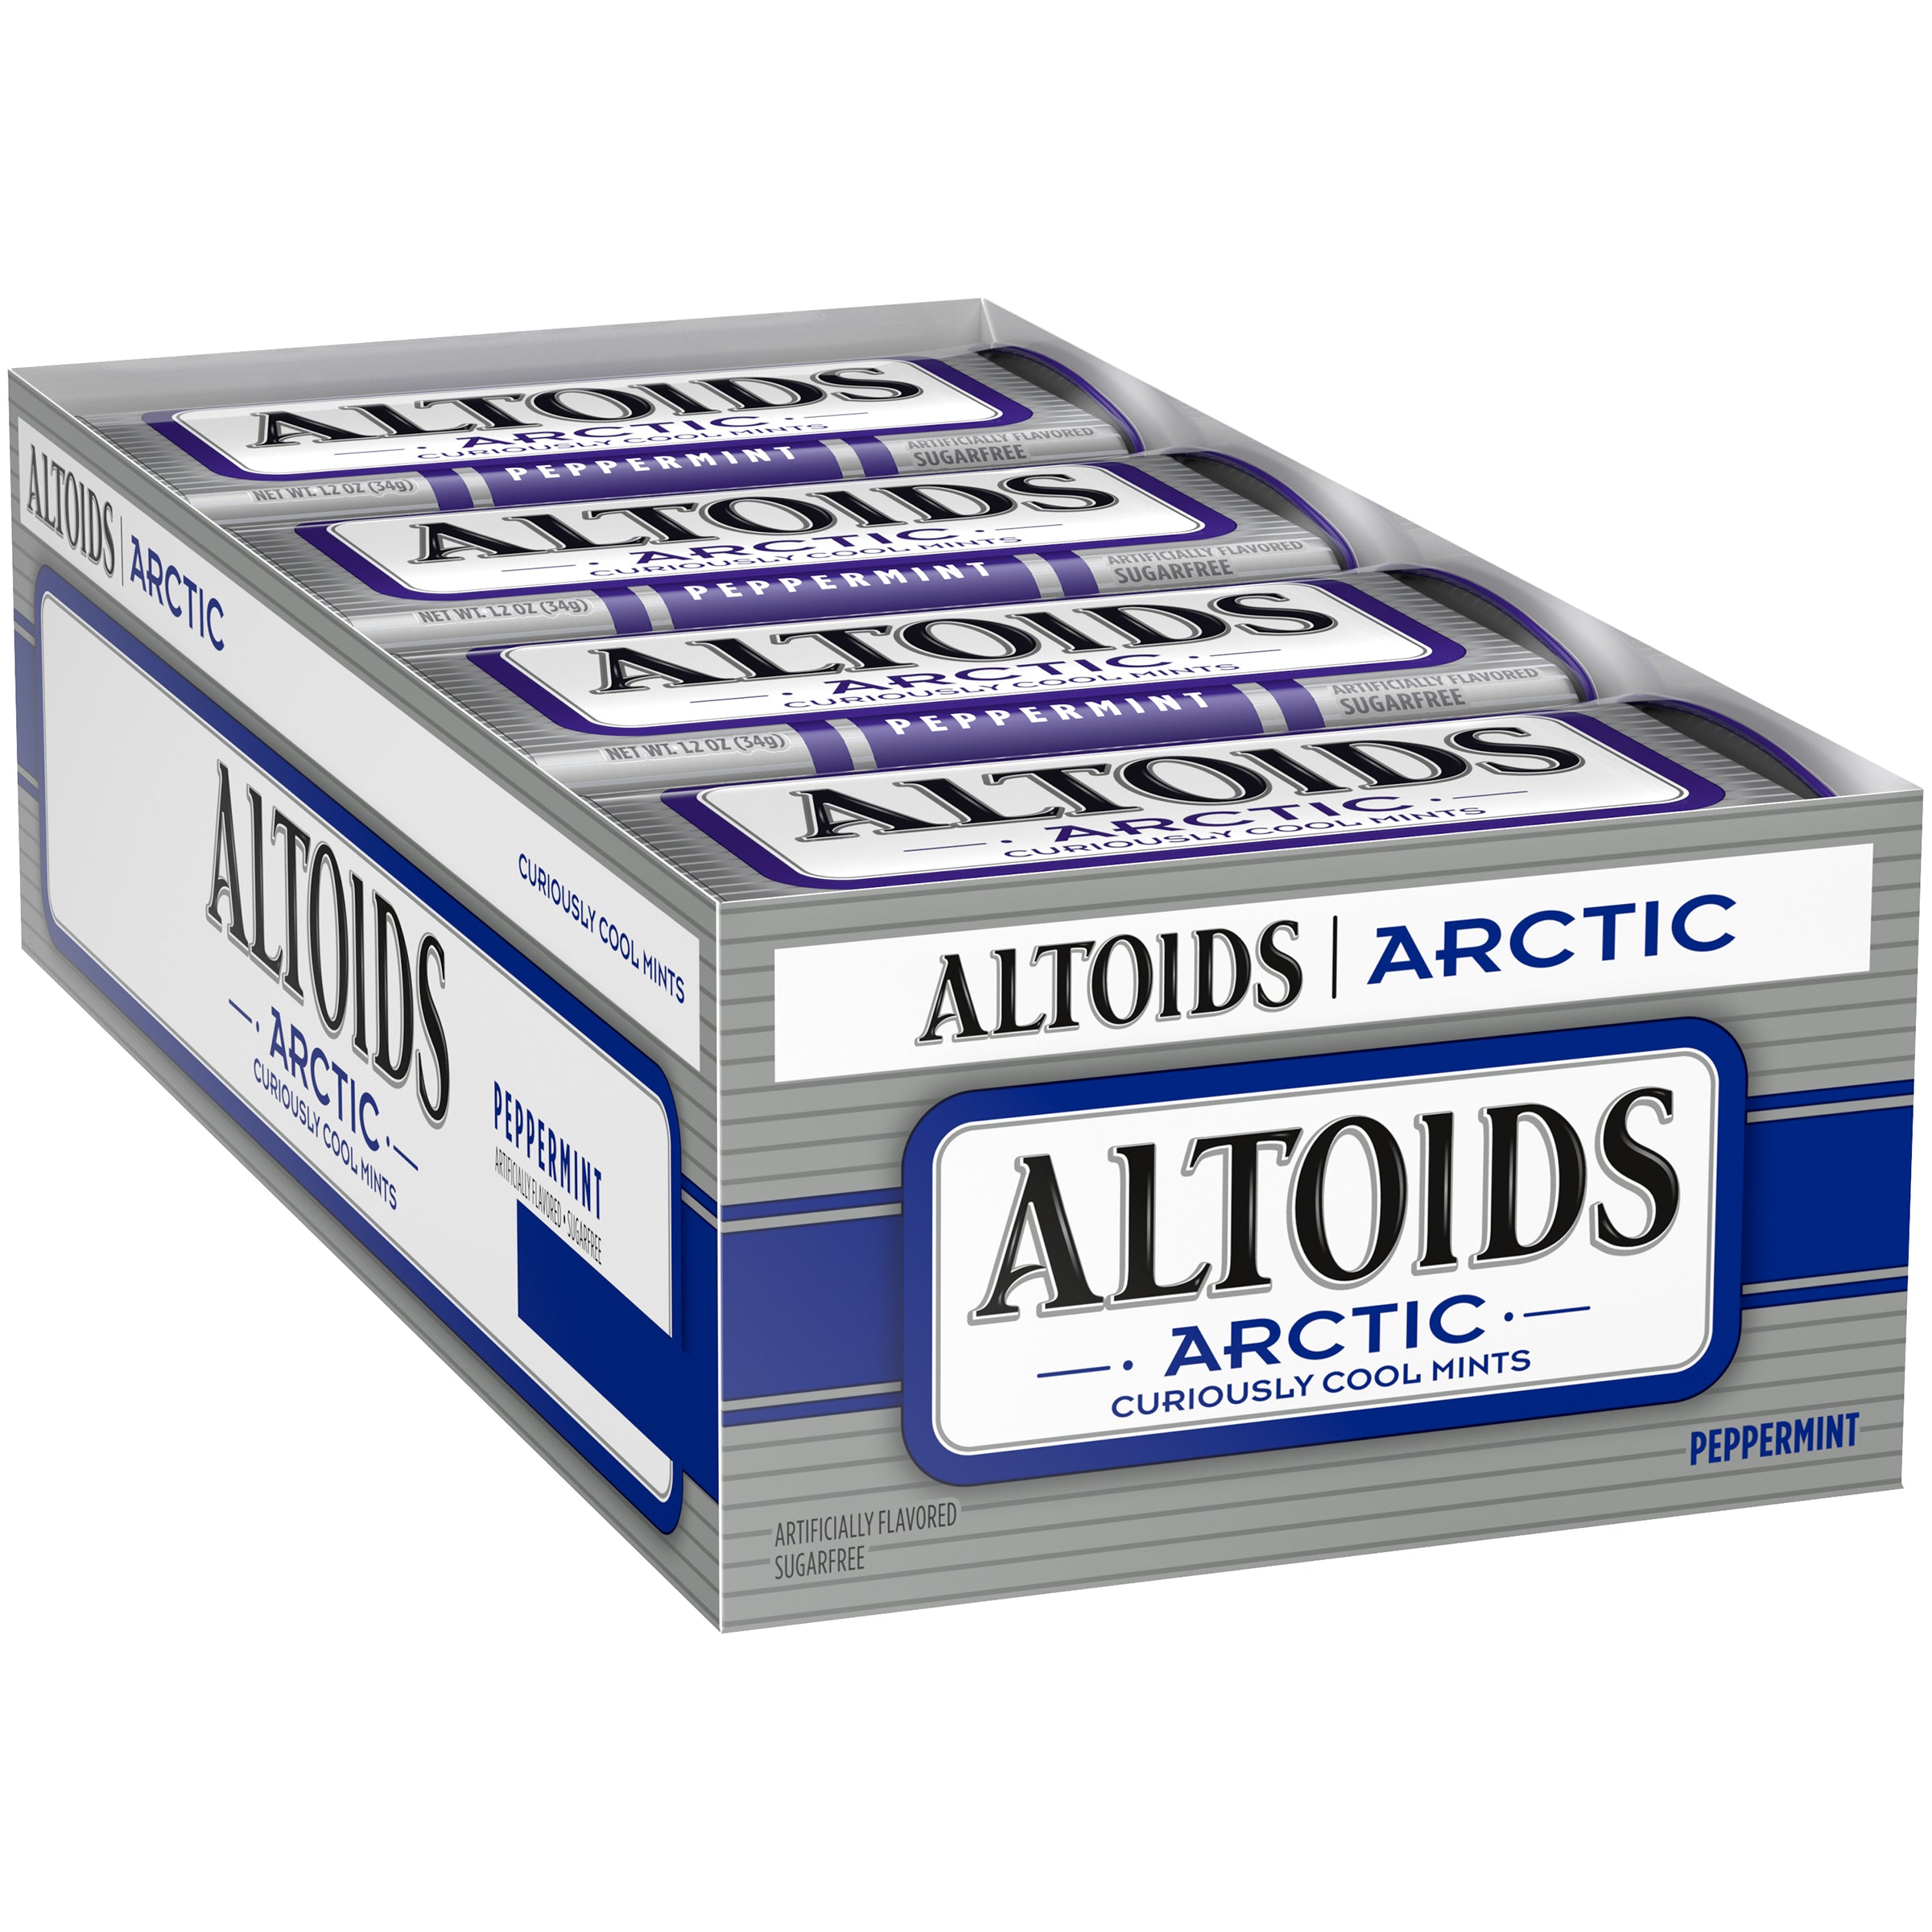 ALTOIDS ARTIC PEPPERMINT - 1.2 oz